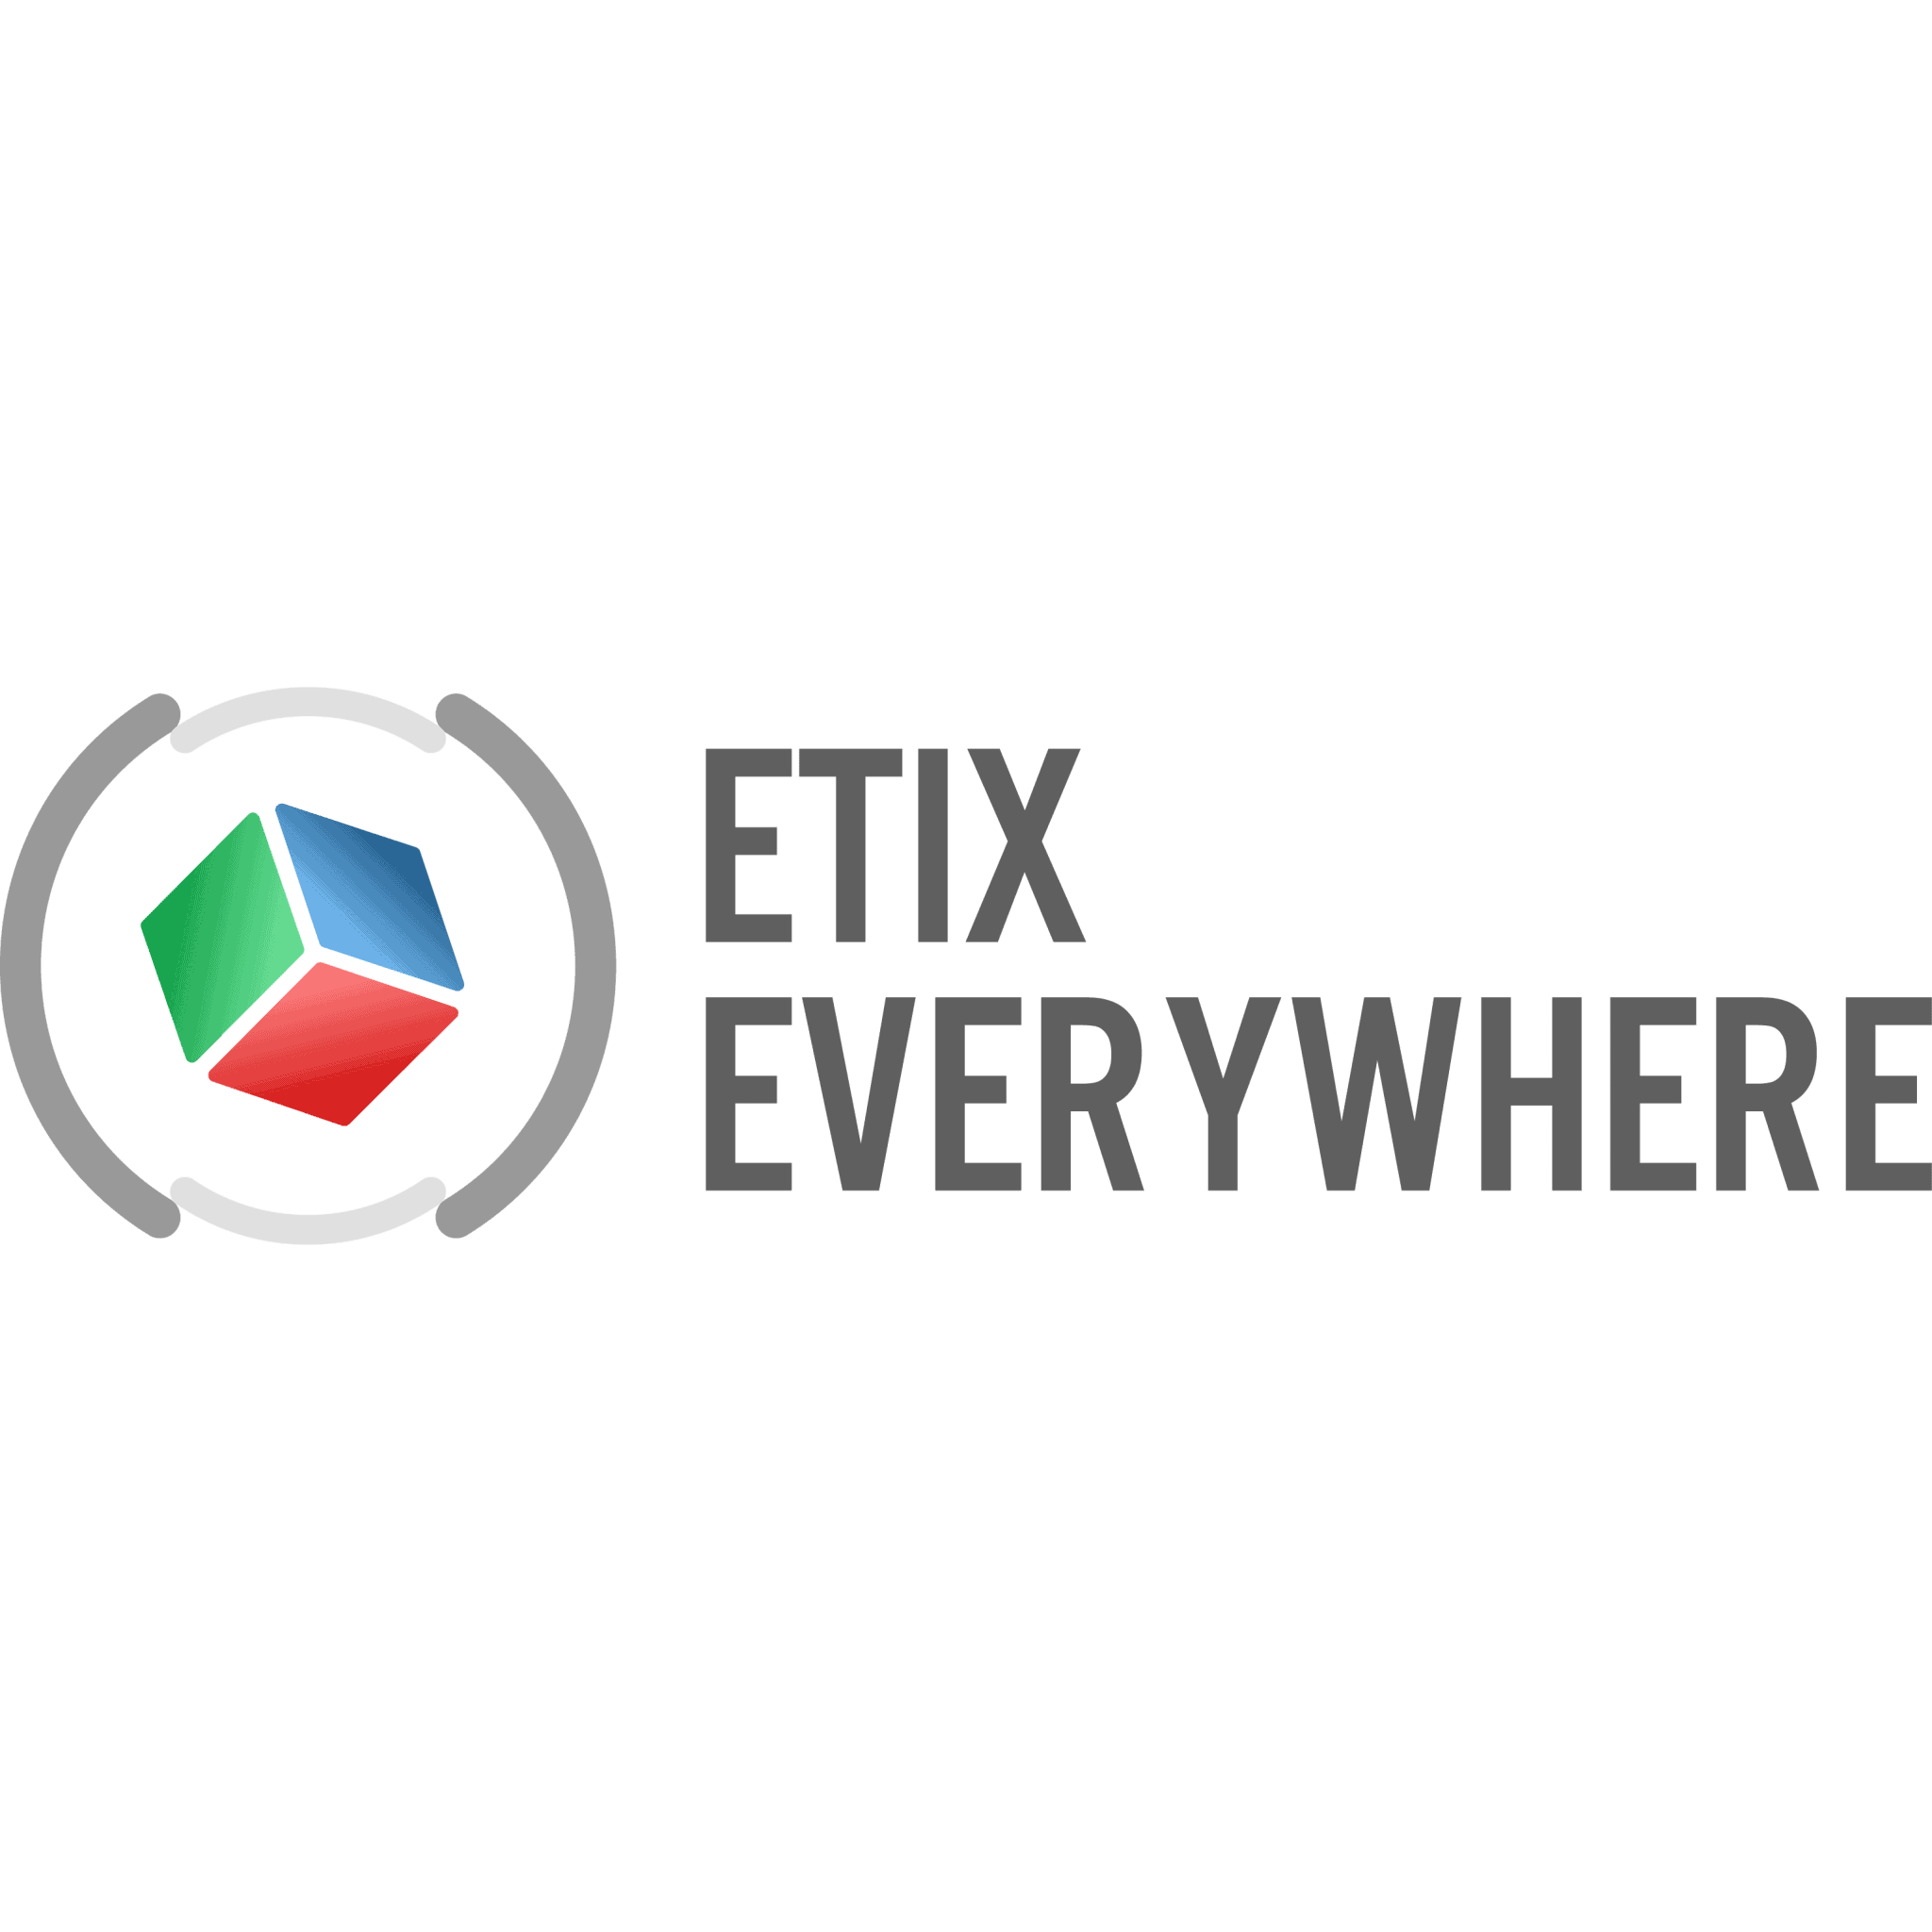 ETIX EVERYWHERE | Stand N34